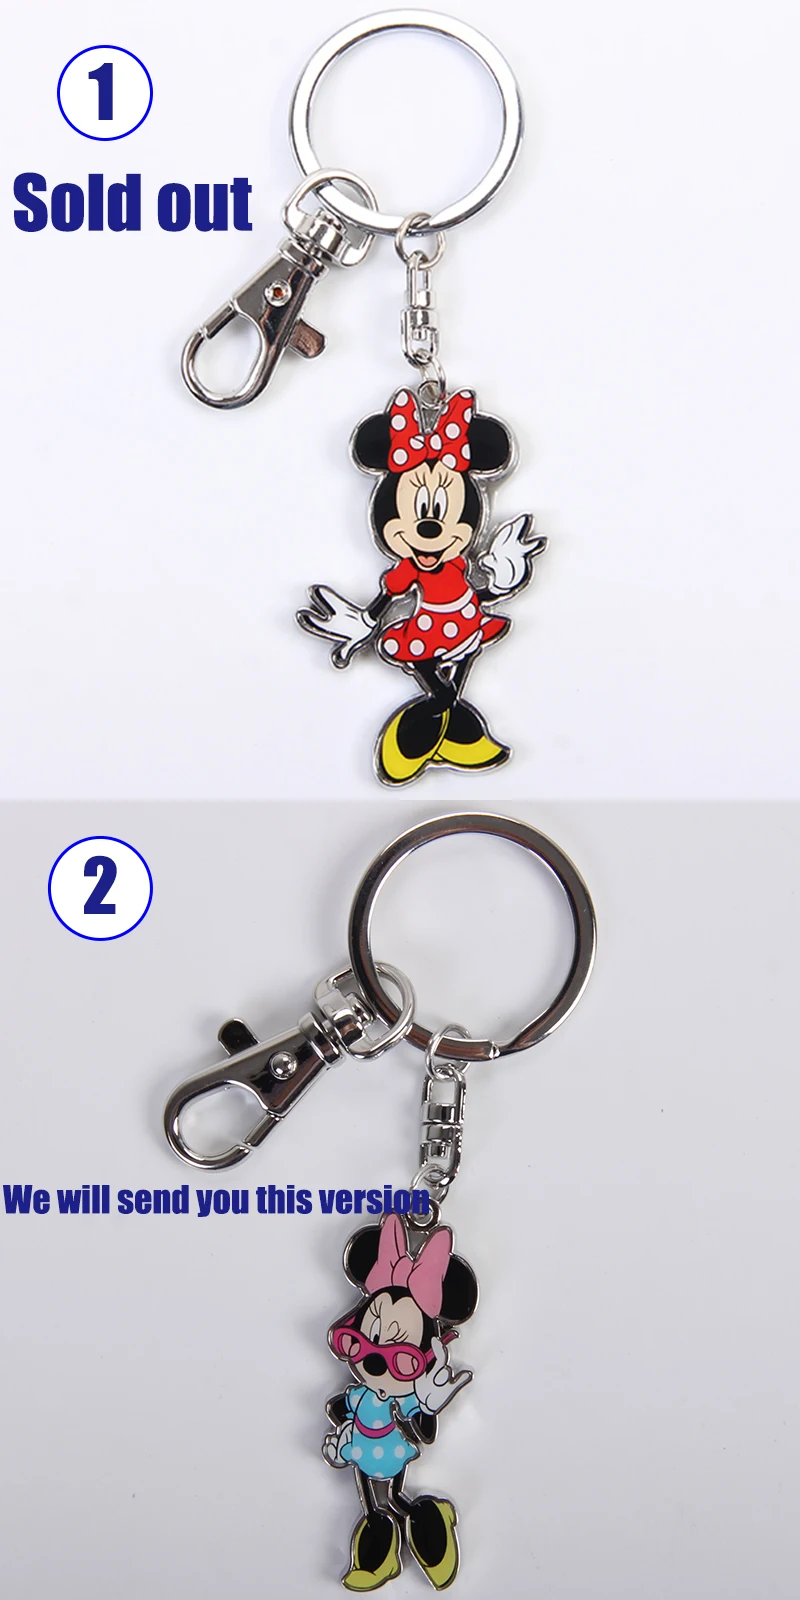 Disney Minnie Железный человек восхитительный porte clef mignon подвеска брелок кулон цепочка для ключей женская сумка ключ кошелек части